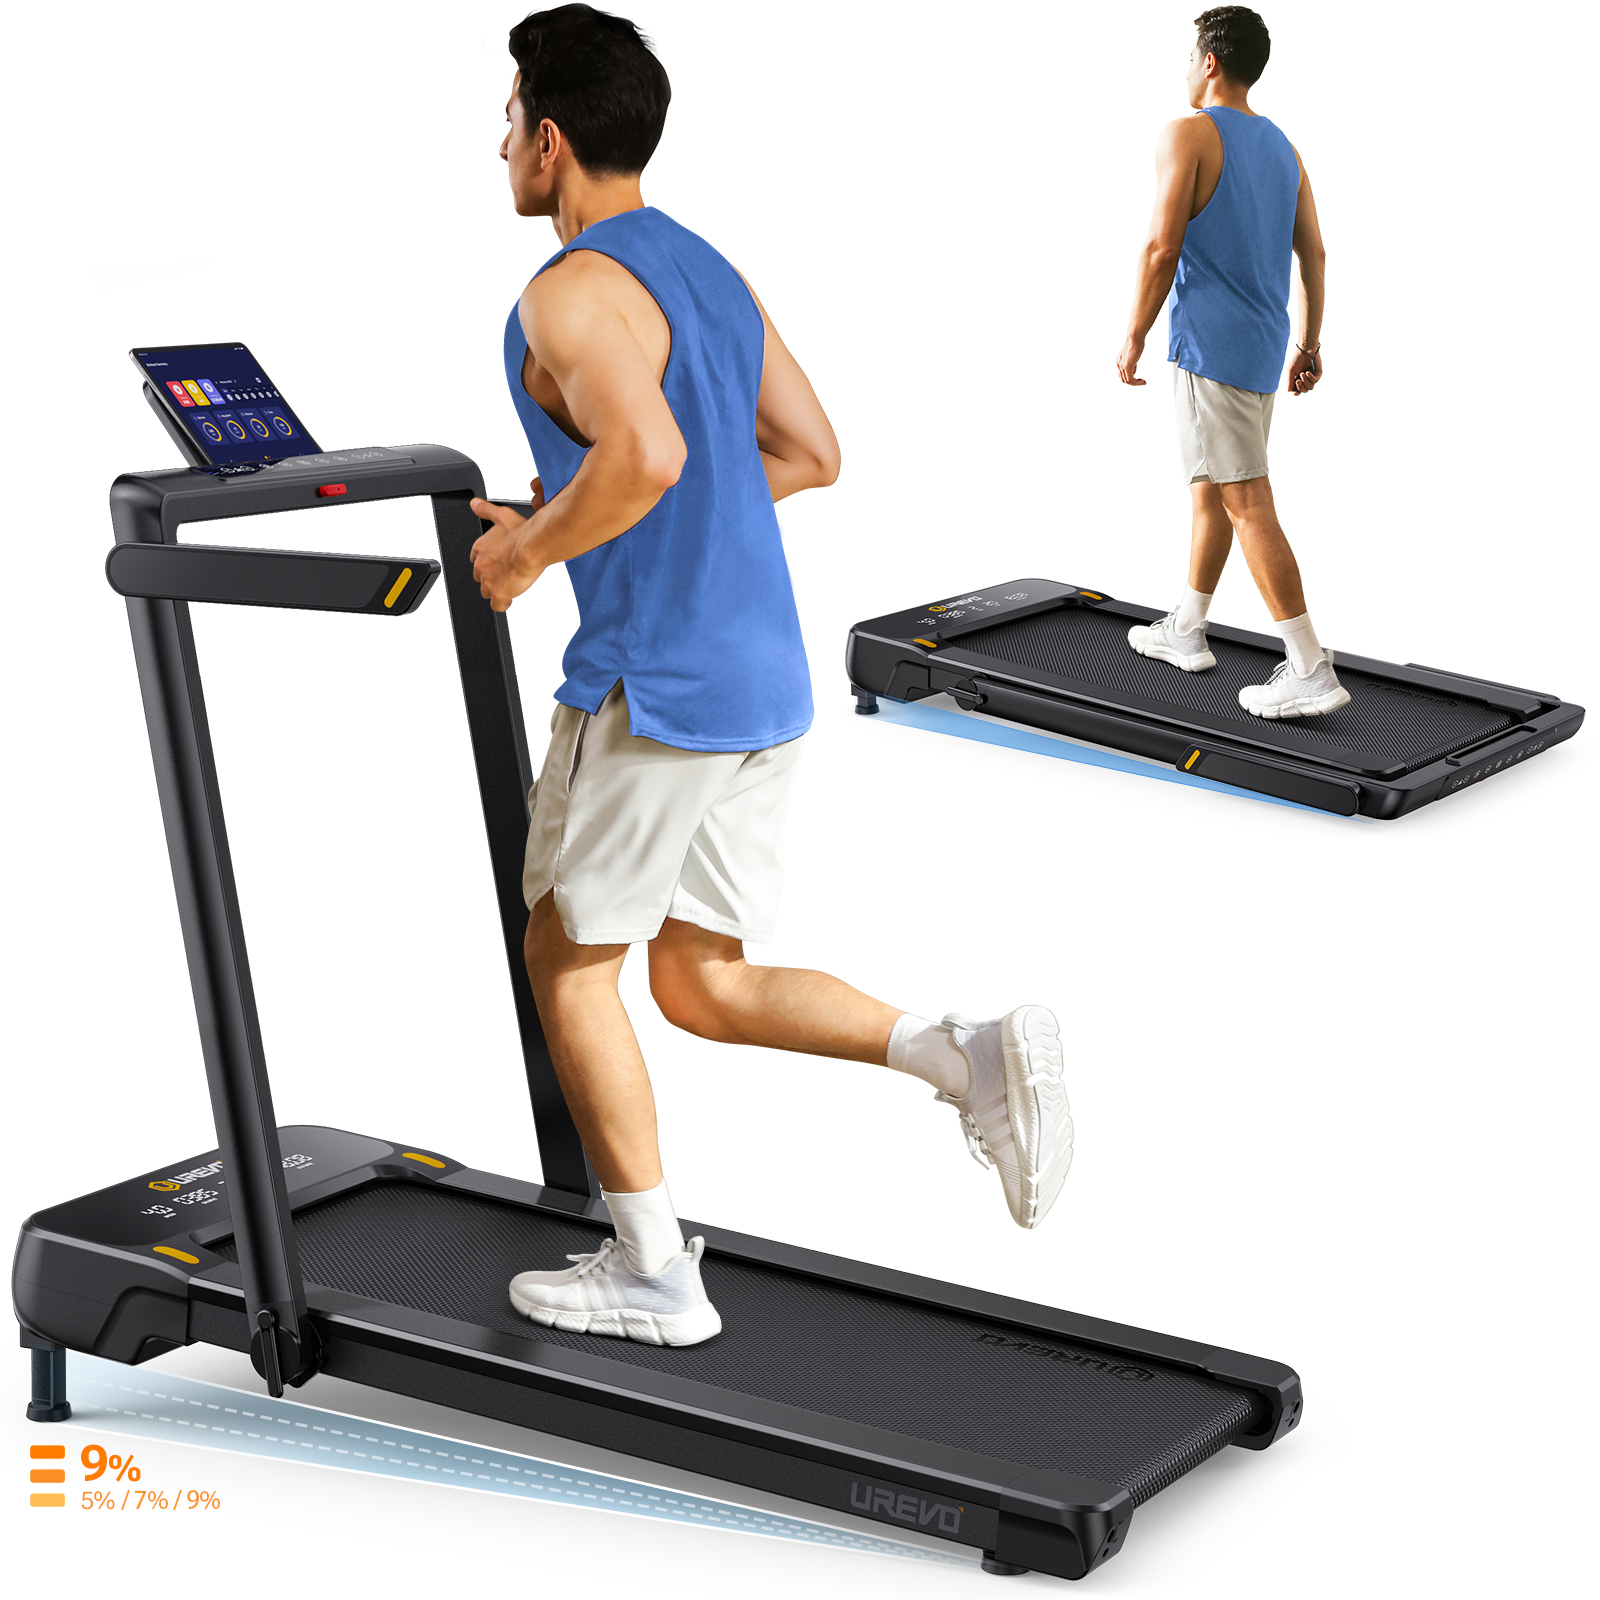 Strol 1 Pro Treadmill